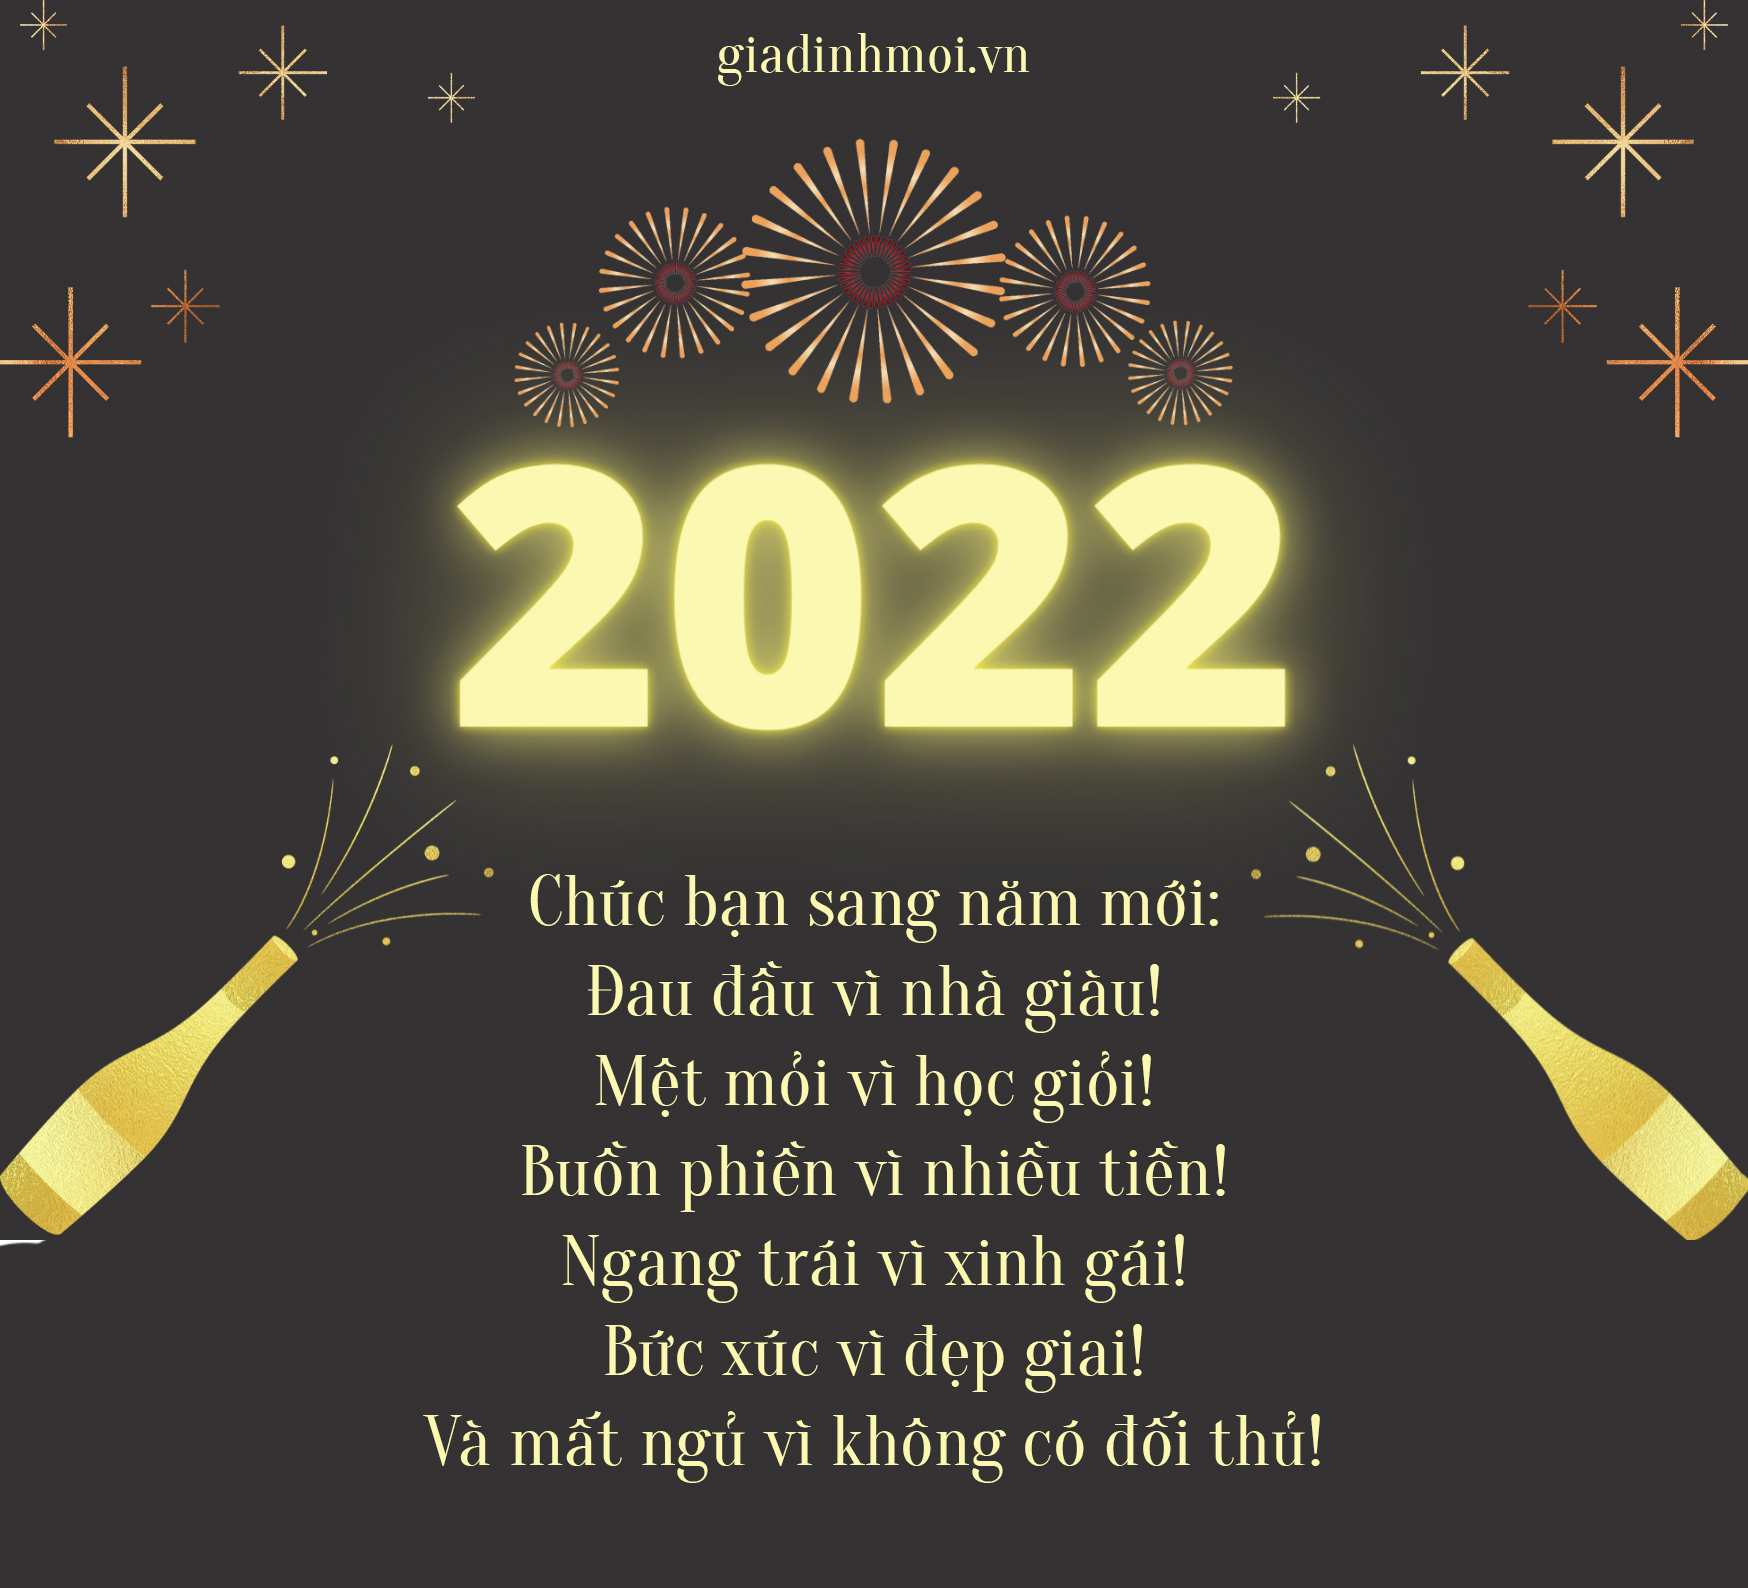 Tuyển tập thiệp chúc mừng năm mới 2022 đẹp, độc, ý nghĩa tặng mọi người 8